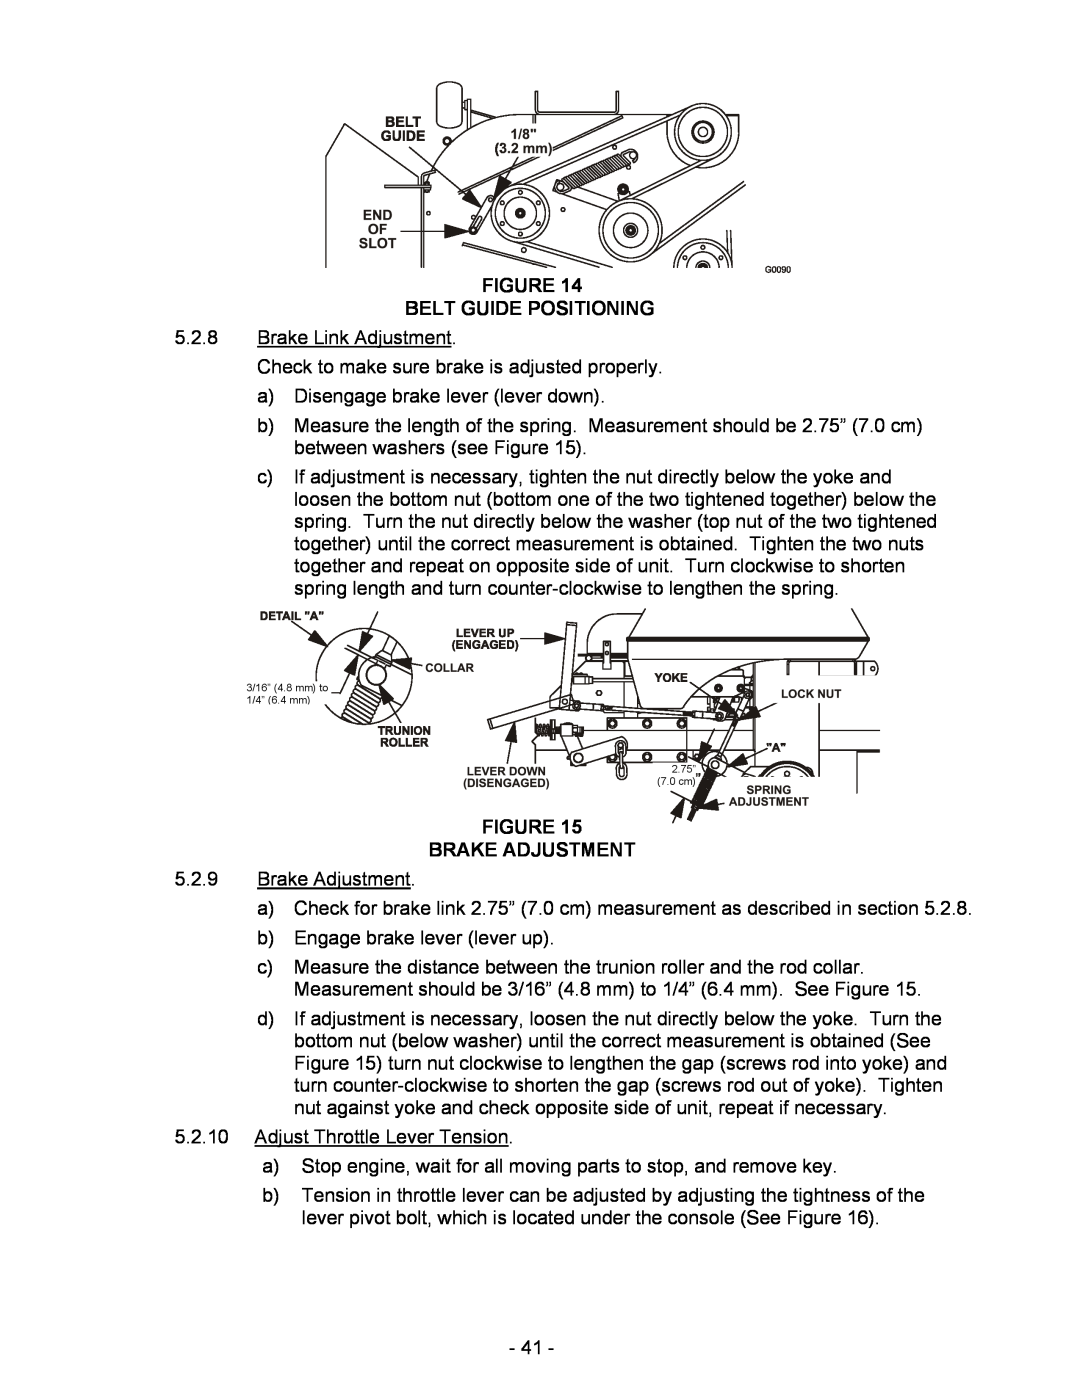 Exmark Lazer HP manual Belt Guide Positioning, Brake Adjustment, 3/16” 4.8 mm to 1/4” 6.4 mm 2.75” 7.0 cm 